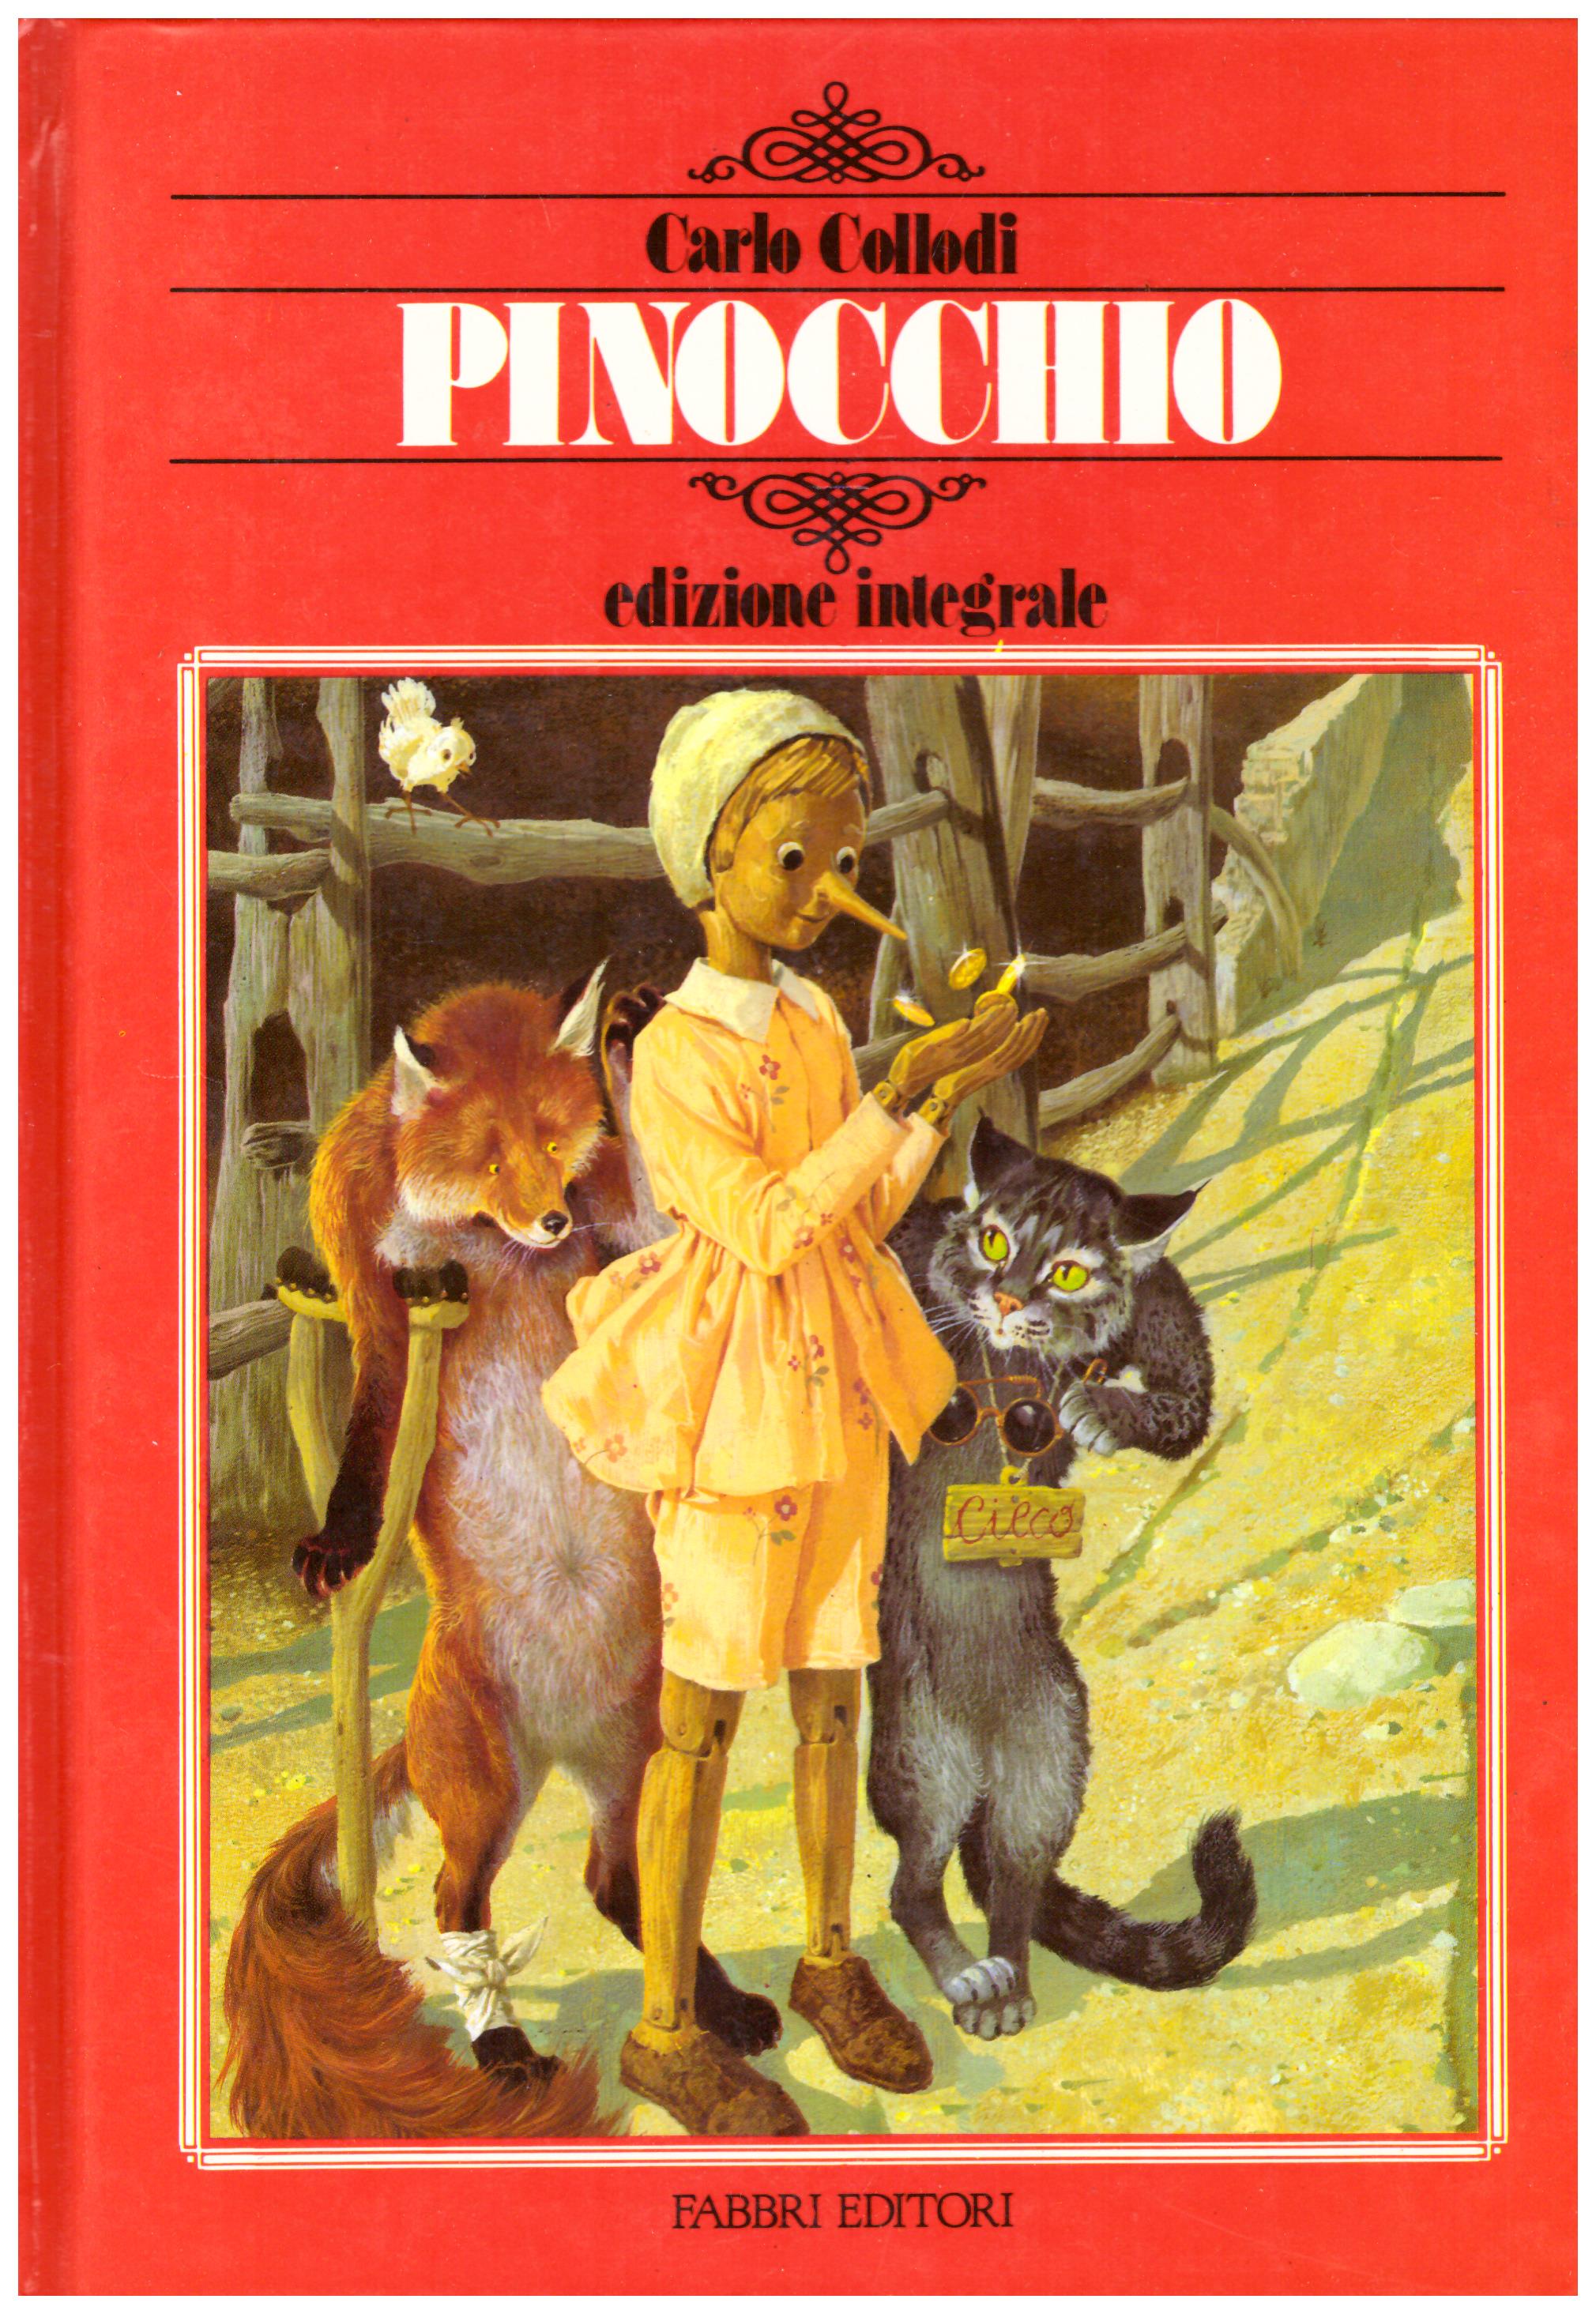 Titolo: Pinocchio Autore: Carlo Collodi, illustrazioni di Sergio Editore: Fabbri editori, 1984